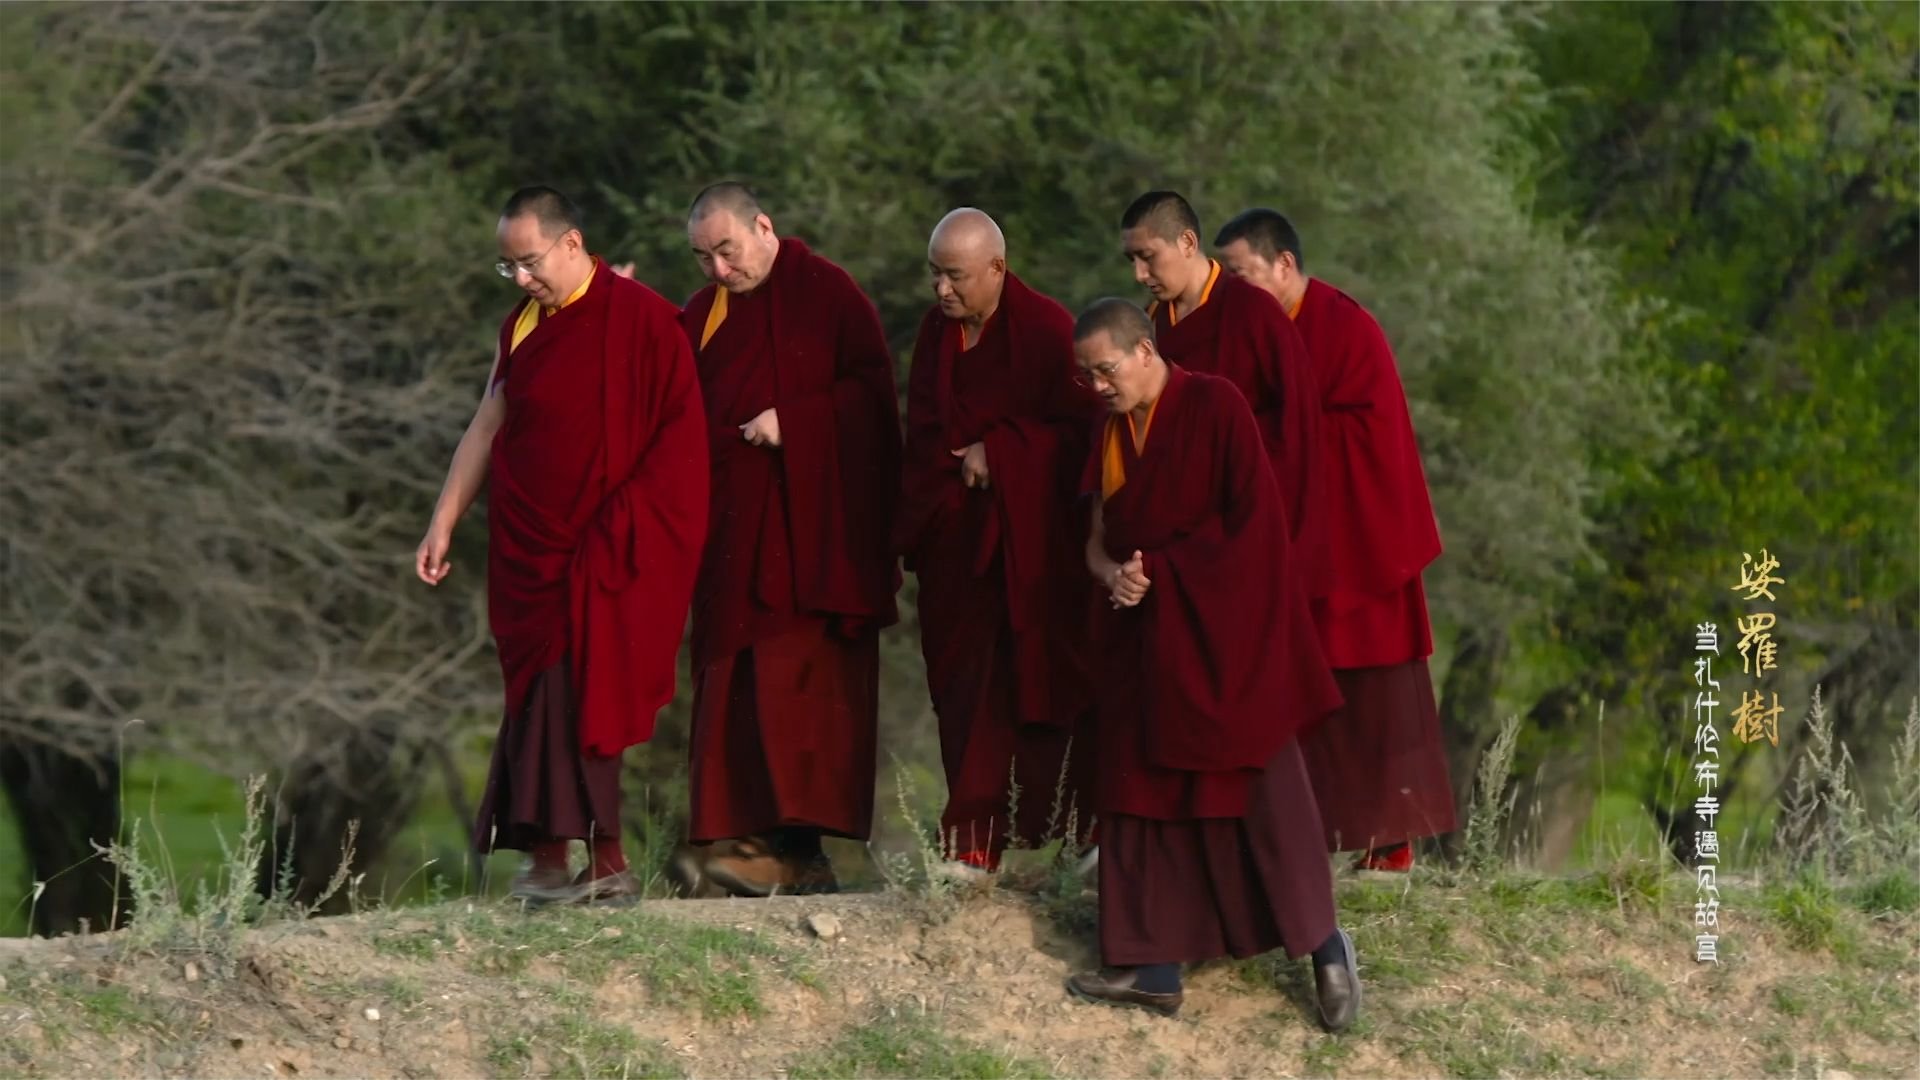 当龙袍遇见袈裟，乾隆握住六世班禅的手，用藏语说了一句话？